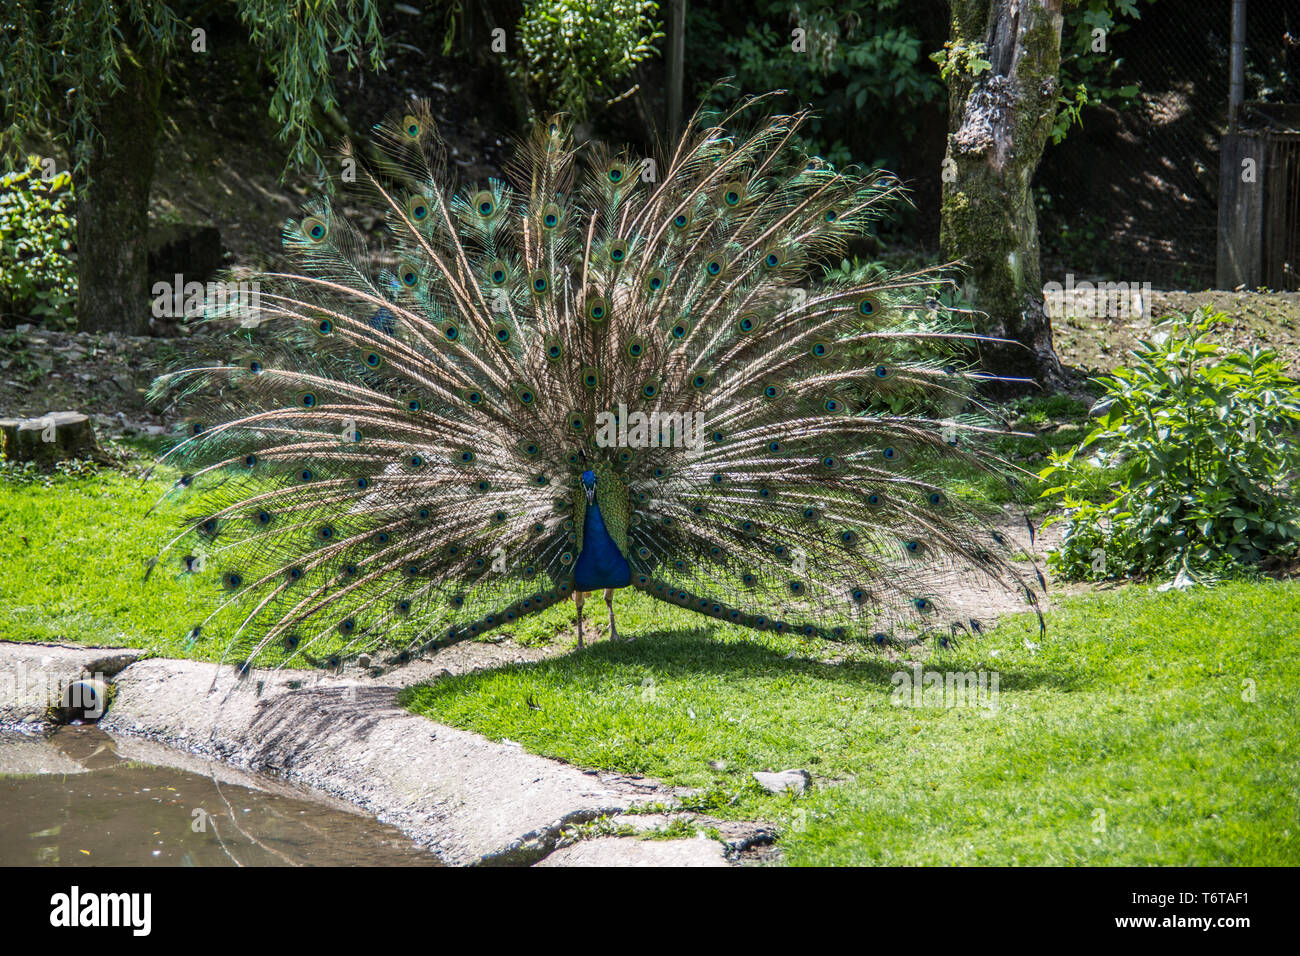 Peacock strikes wheel to impress Stock Photo